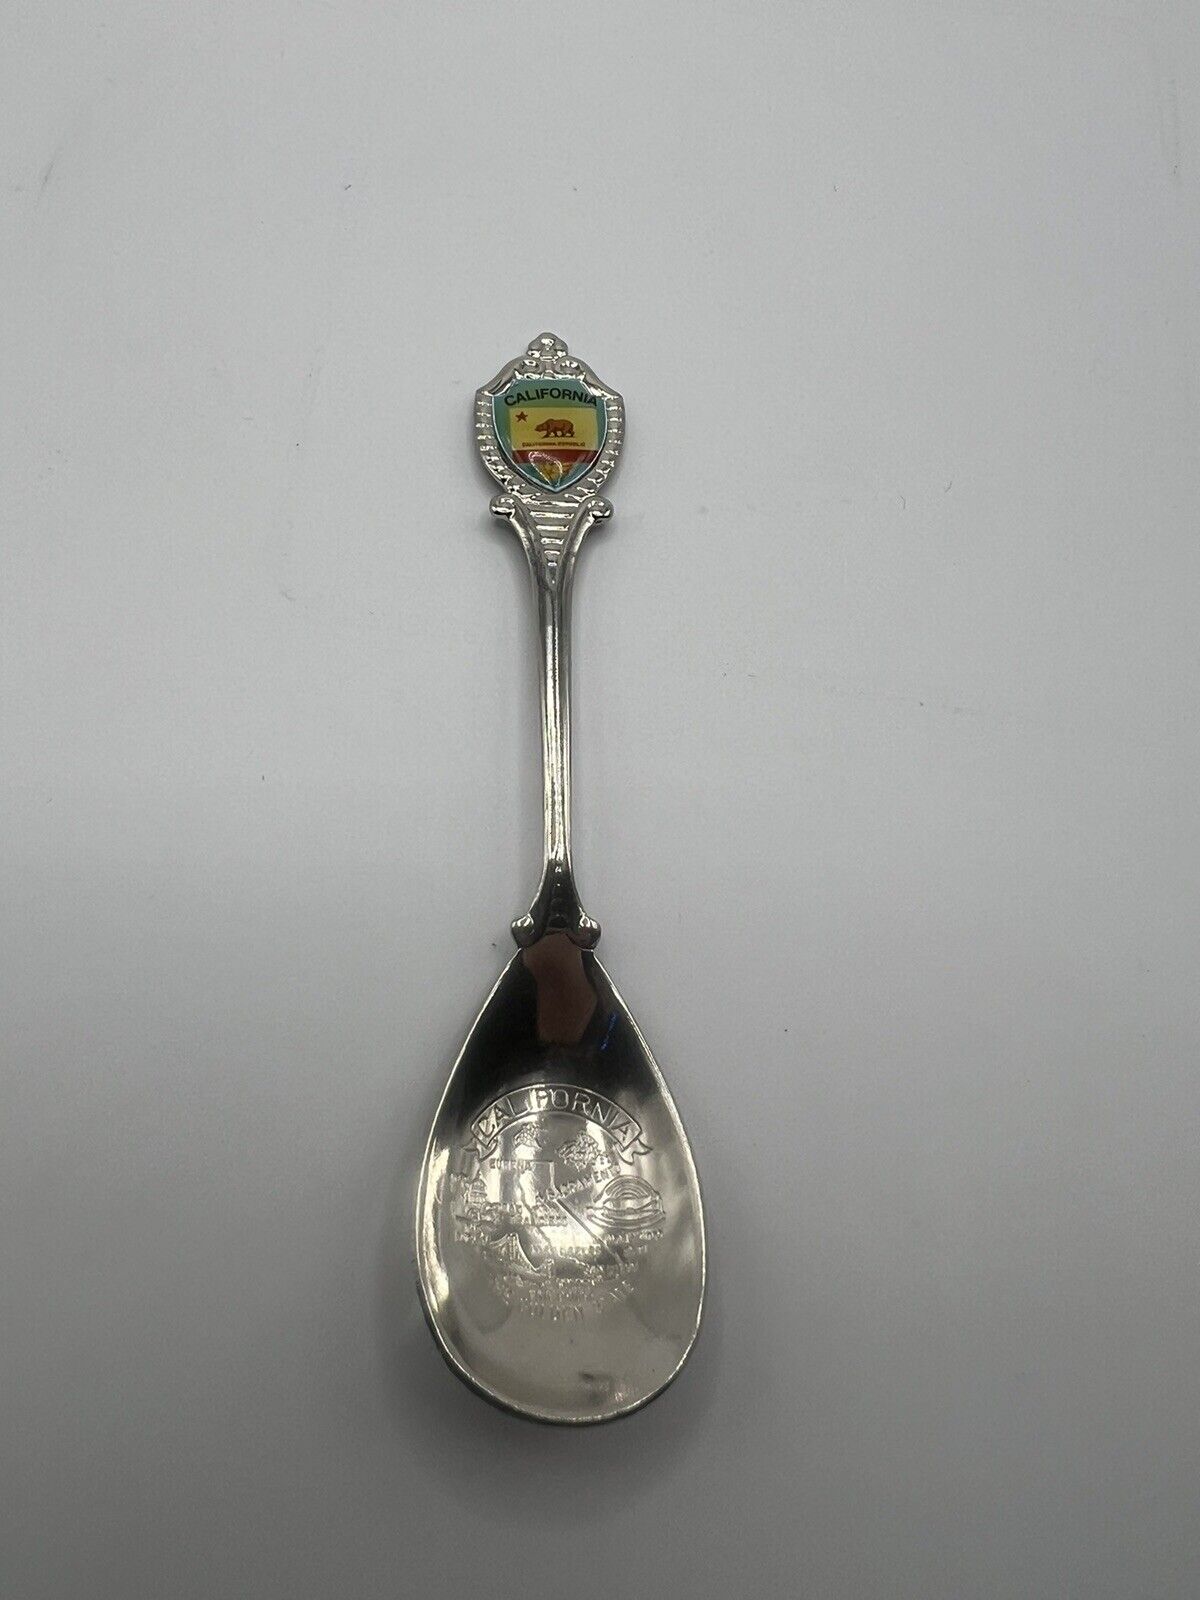 California Vintage Souvenir Spoon Collectible